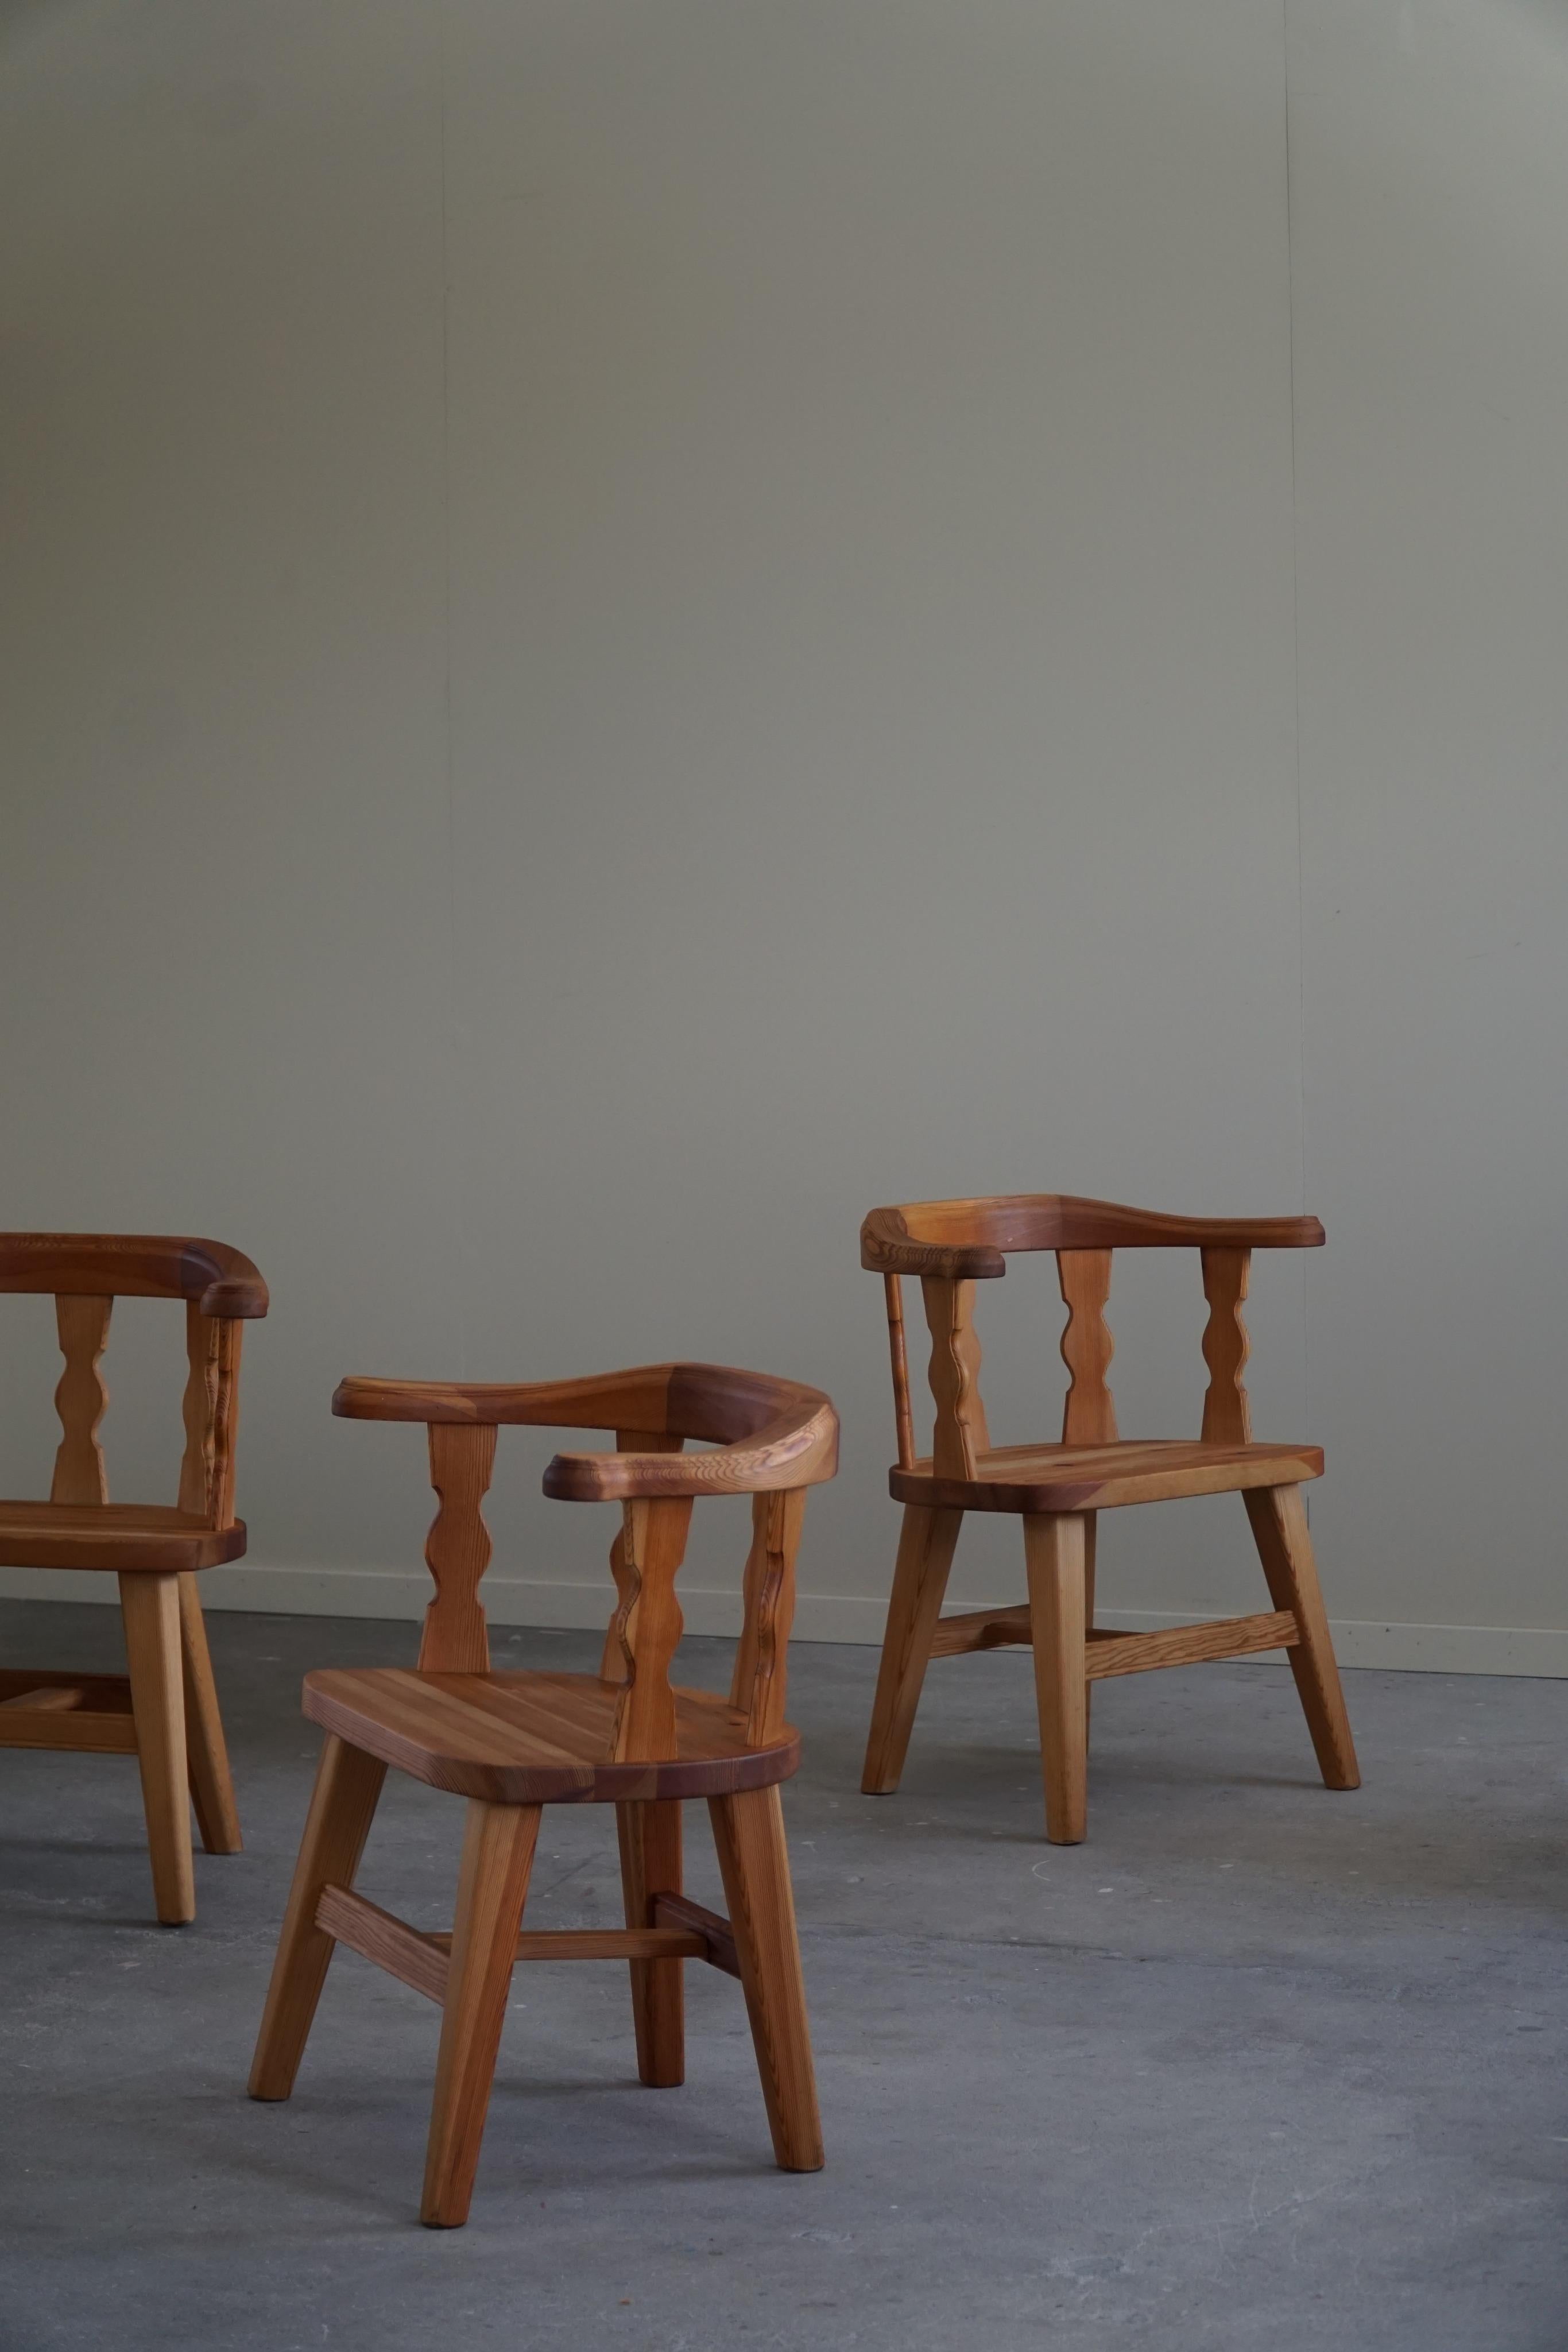 Un ensemble de 4 charmants fauteuils brutalistes en pin massif. Fabriqué en Norvège par Krogenæs dans les années 1950-1960. 

Ces chaises de salle à manger sculpturales donnent une impression très forte qui se marie bien avec de nombreux types de